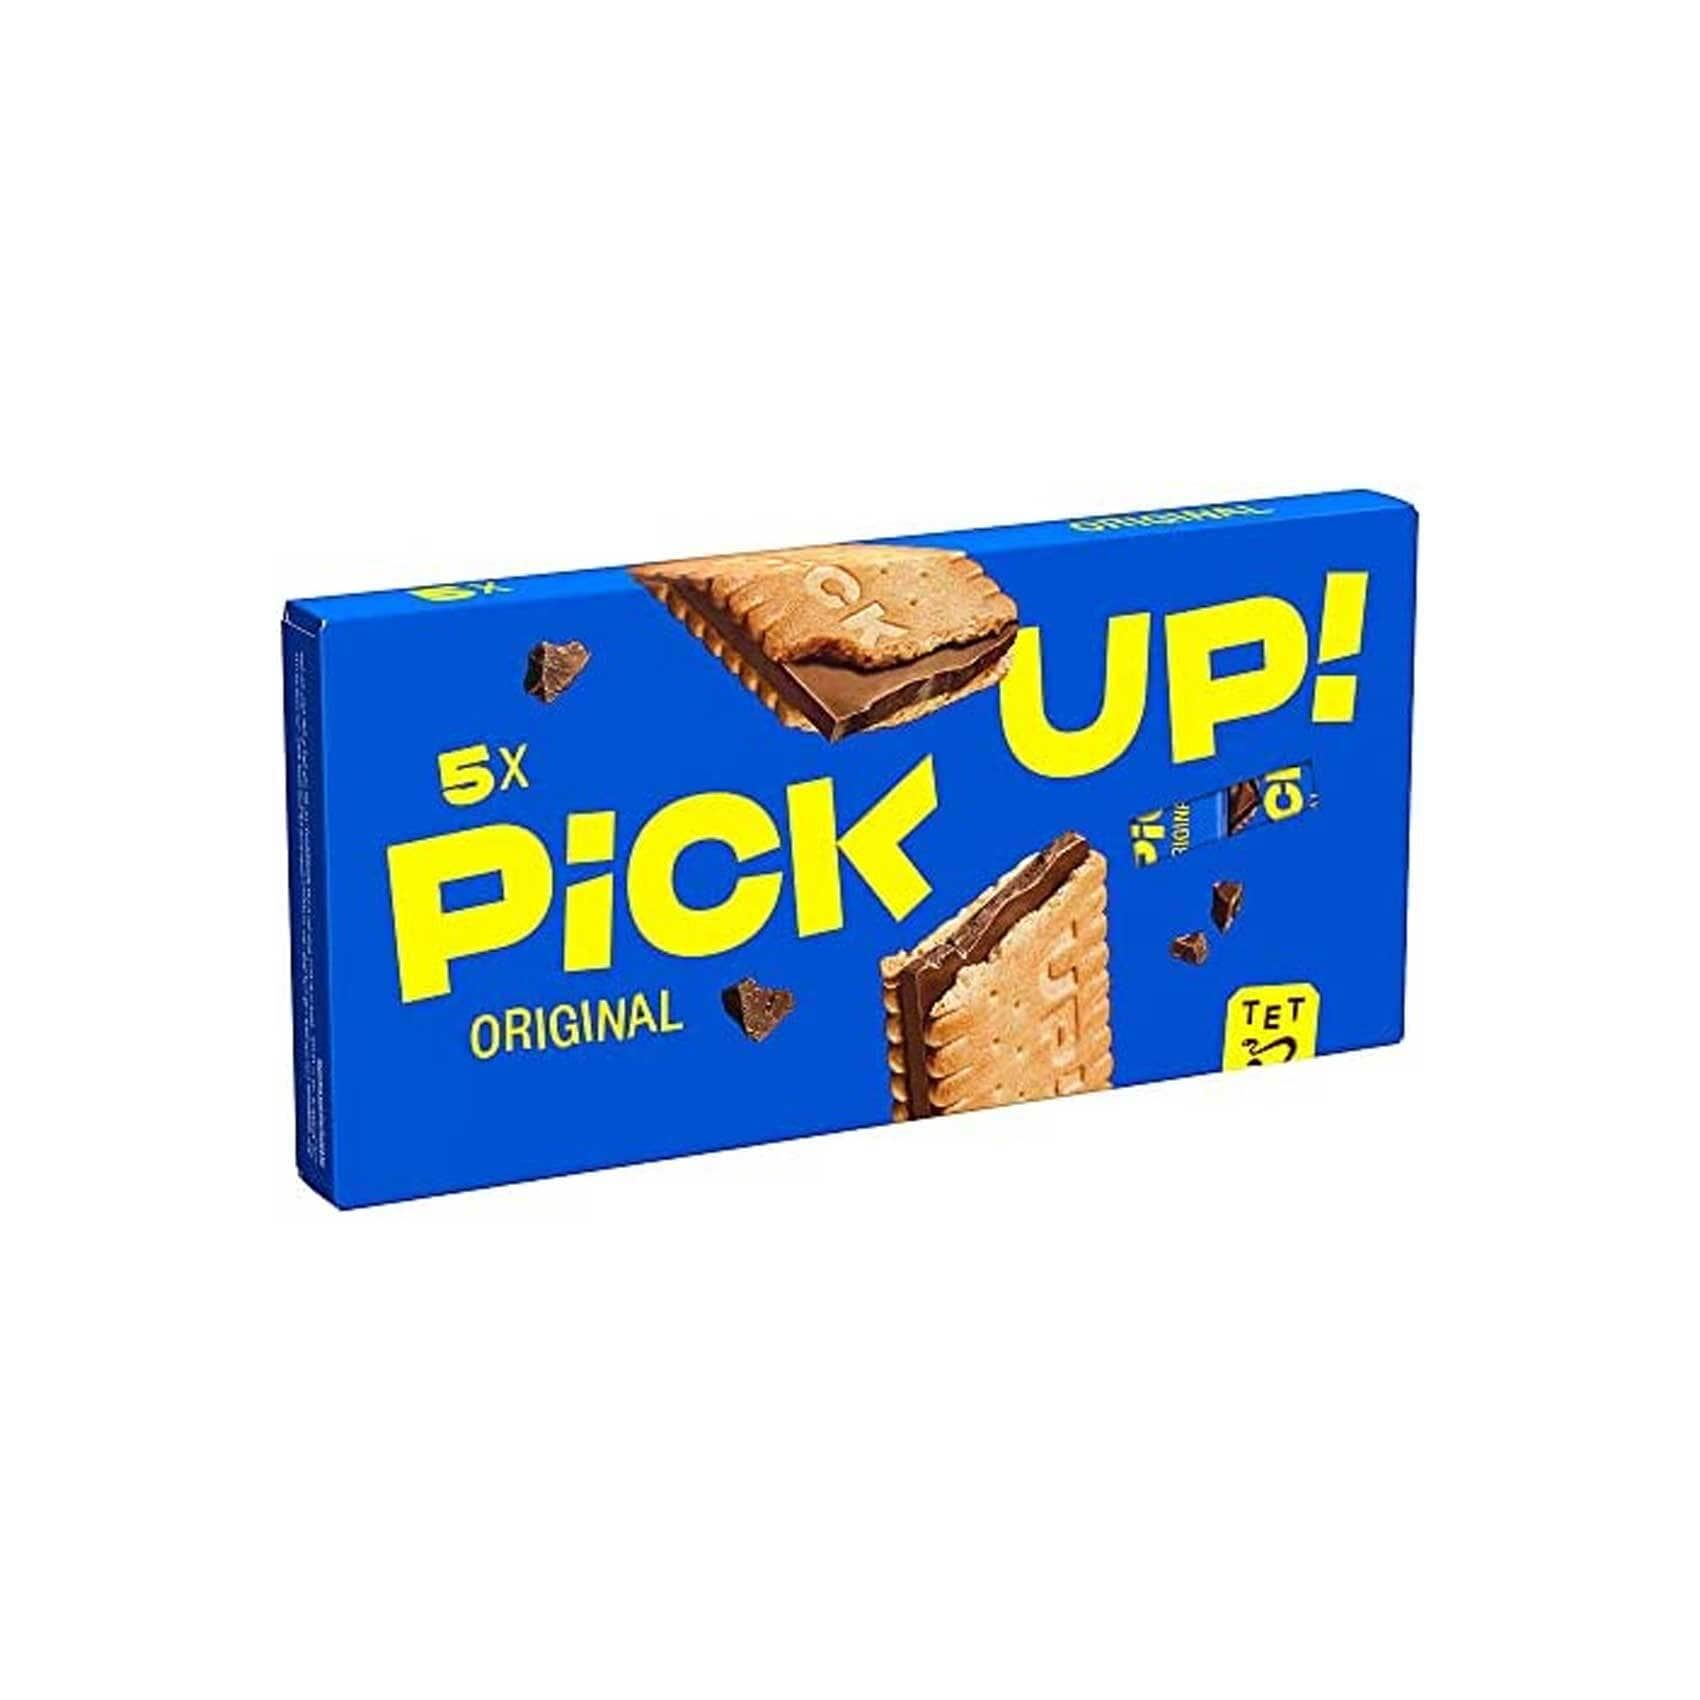 Buy Bahlsen PICK UP! Choco Biscuit 140g Online